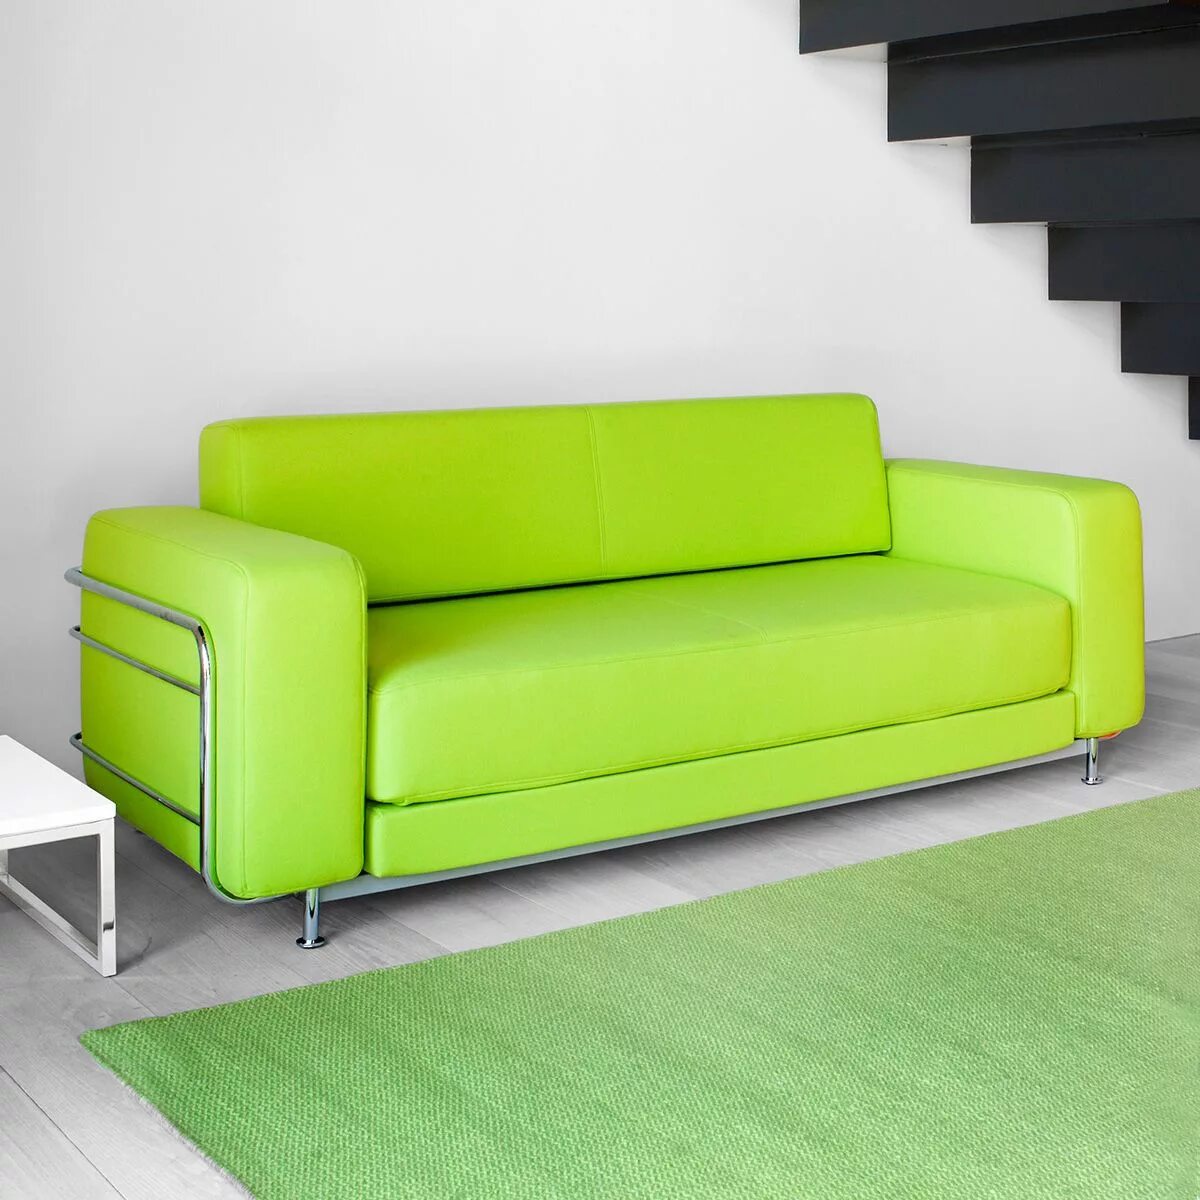 Купить диван. Диван Sylvain Sofa. Салатовый диван. Зеленый диван. Диван зеленого цвета.